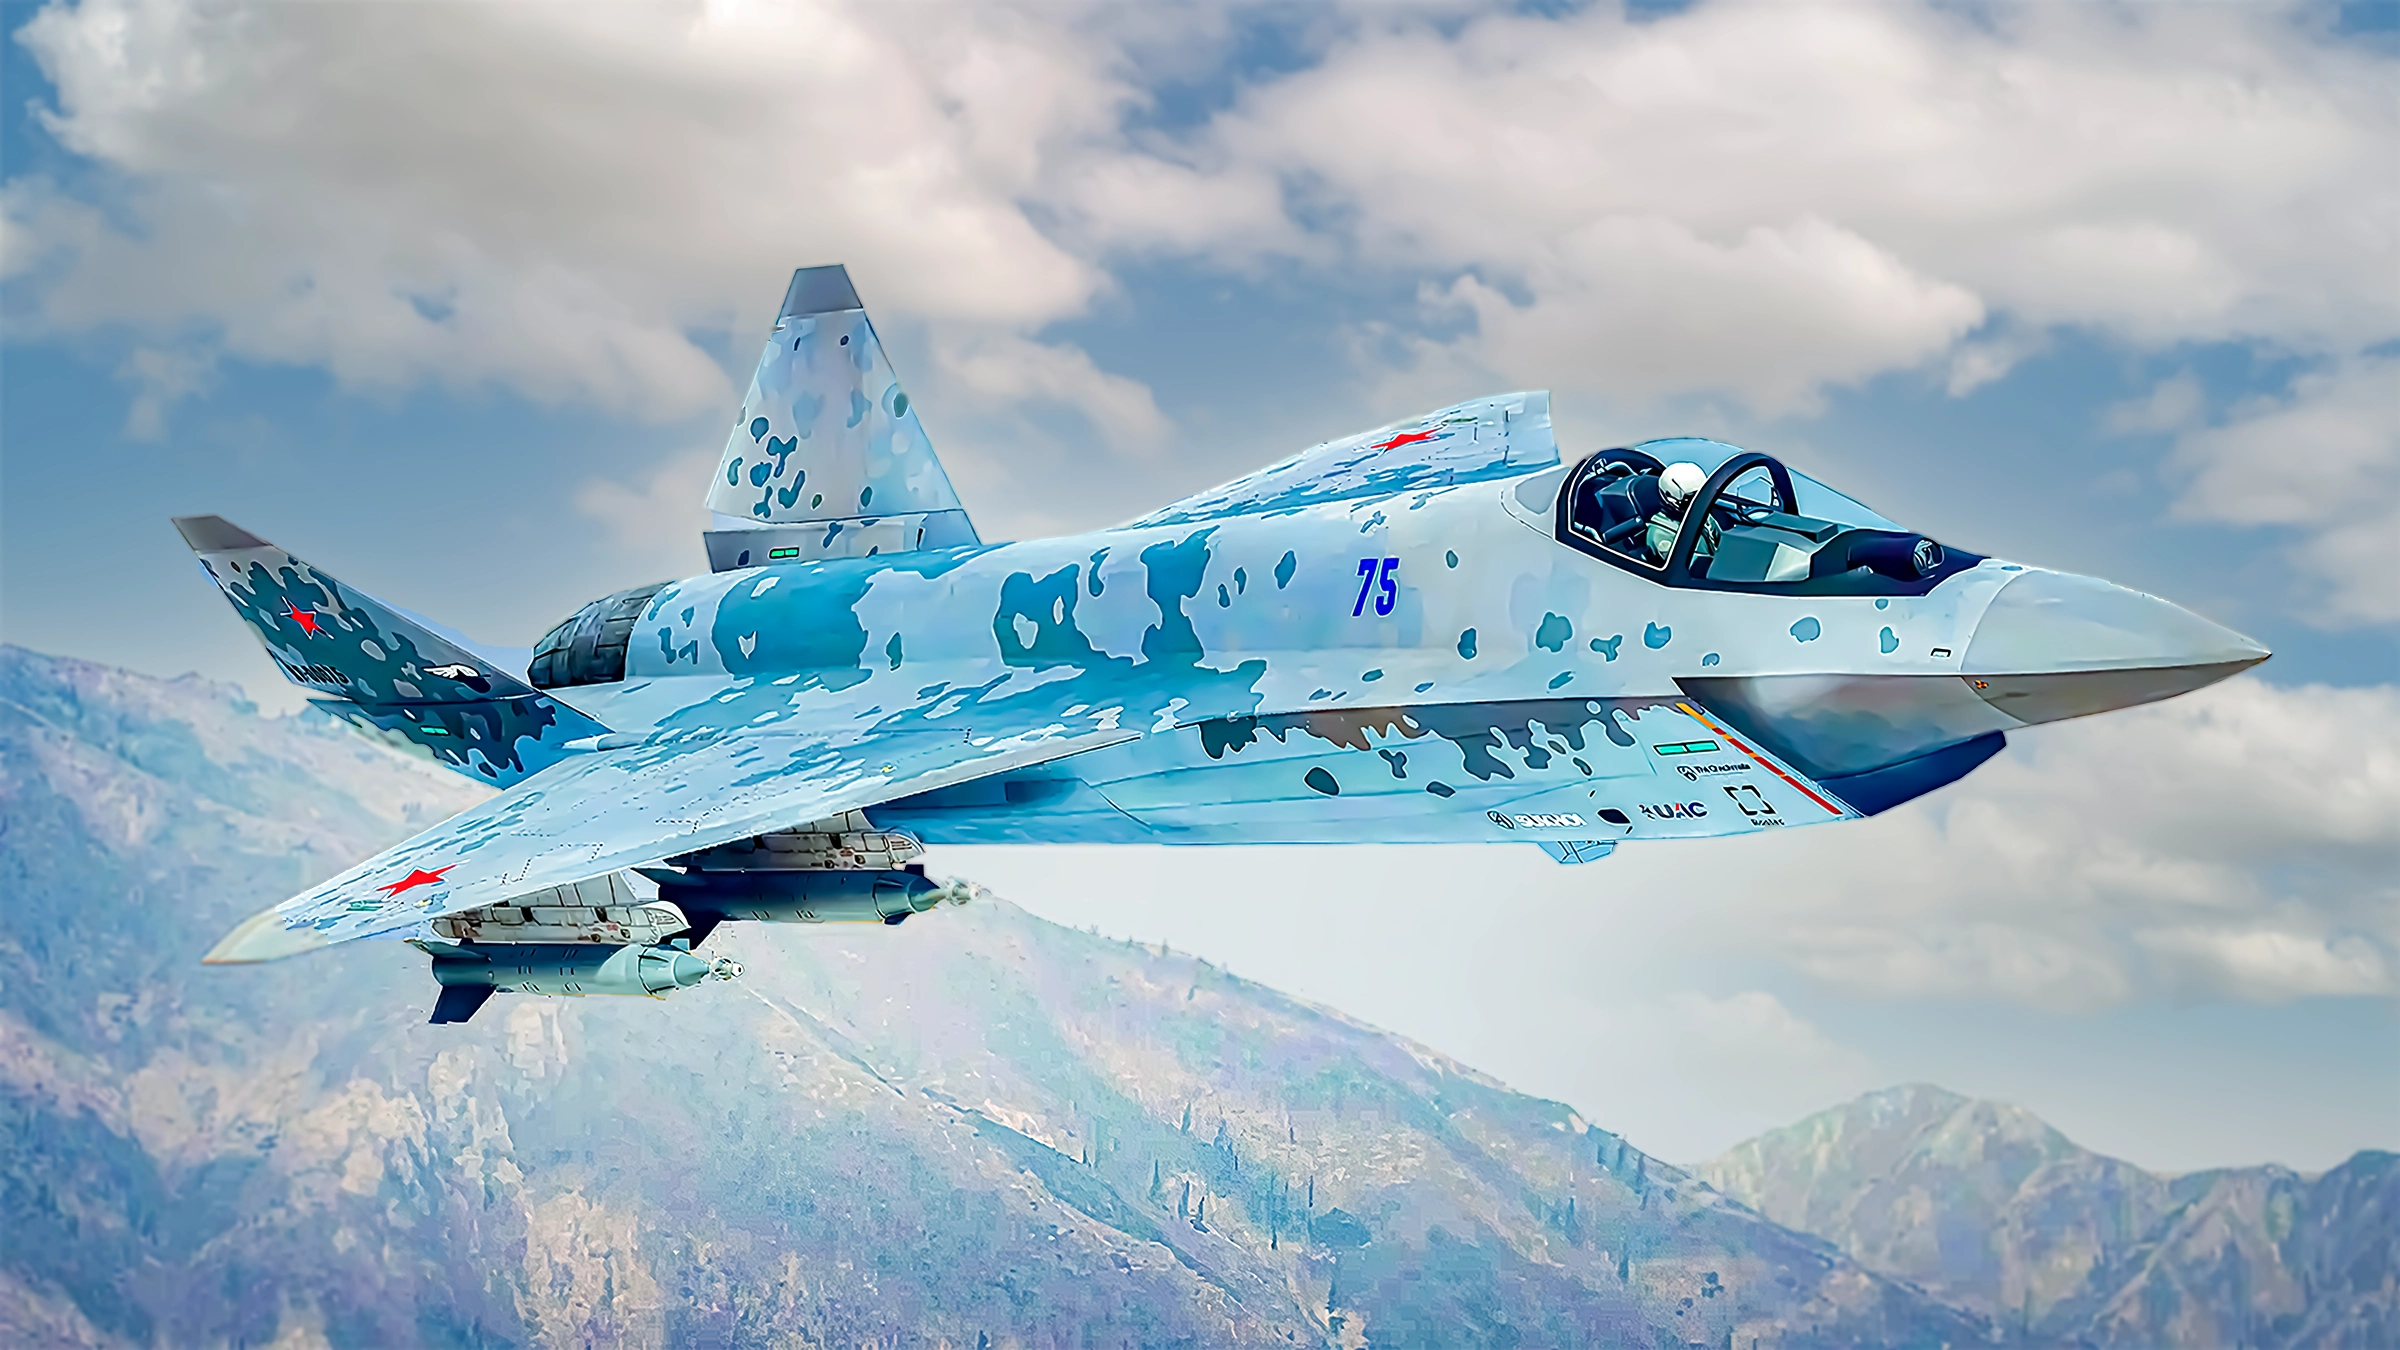 Su-75 Checkmate wird aufgrund von Budgetengpässen eingestellt